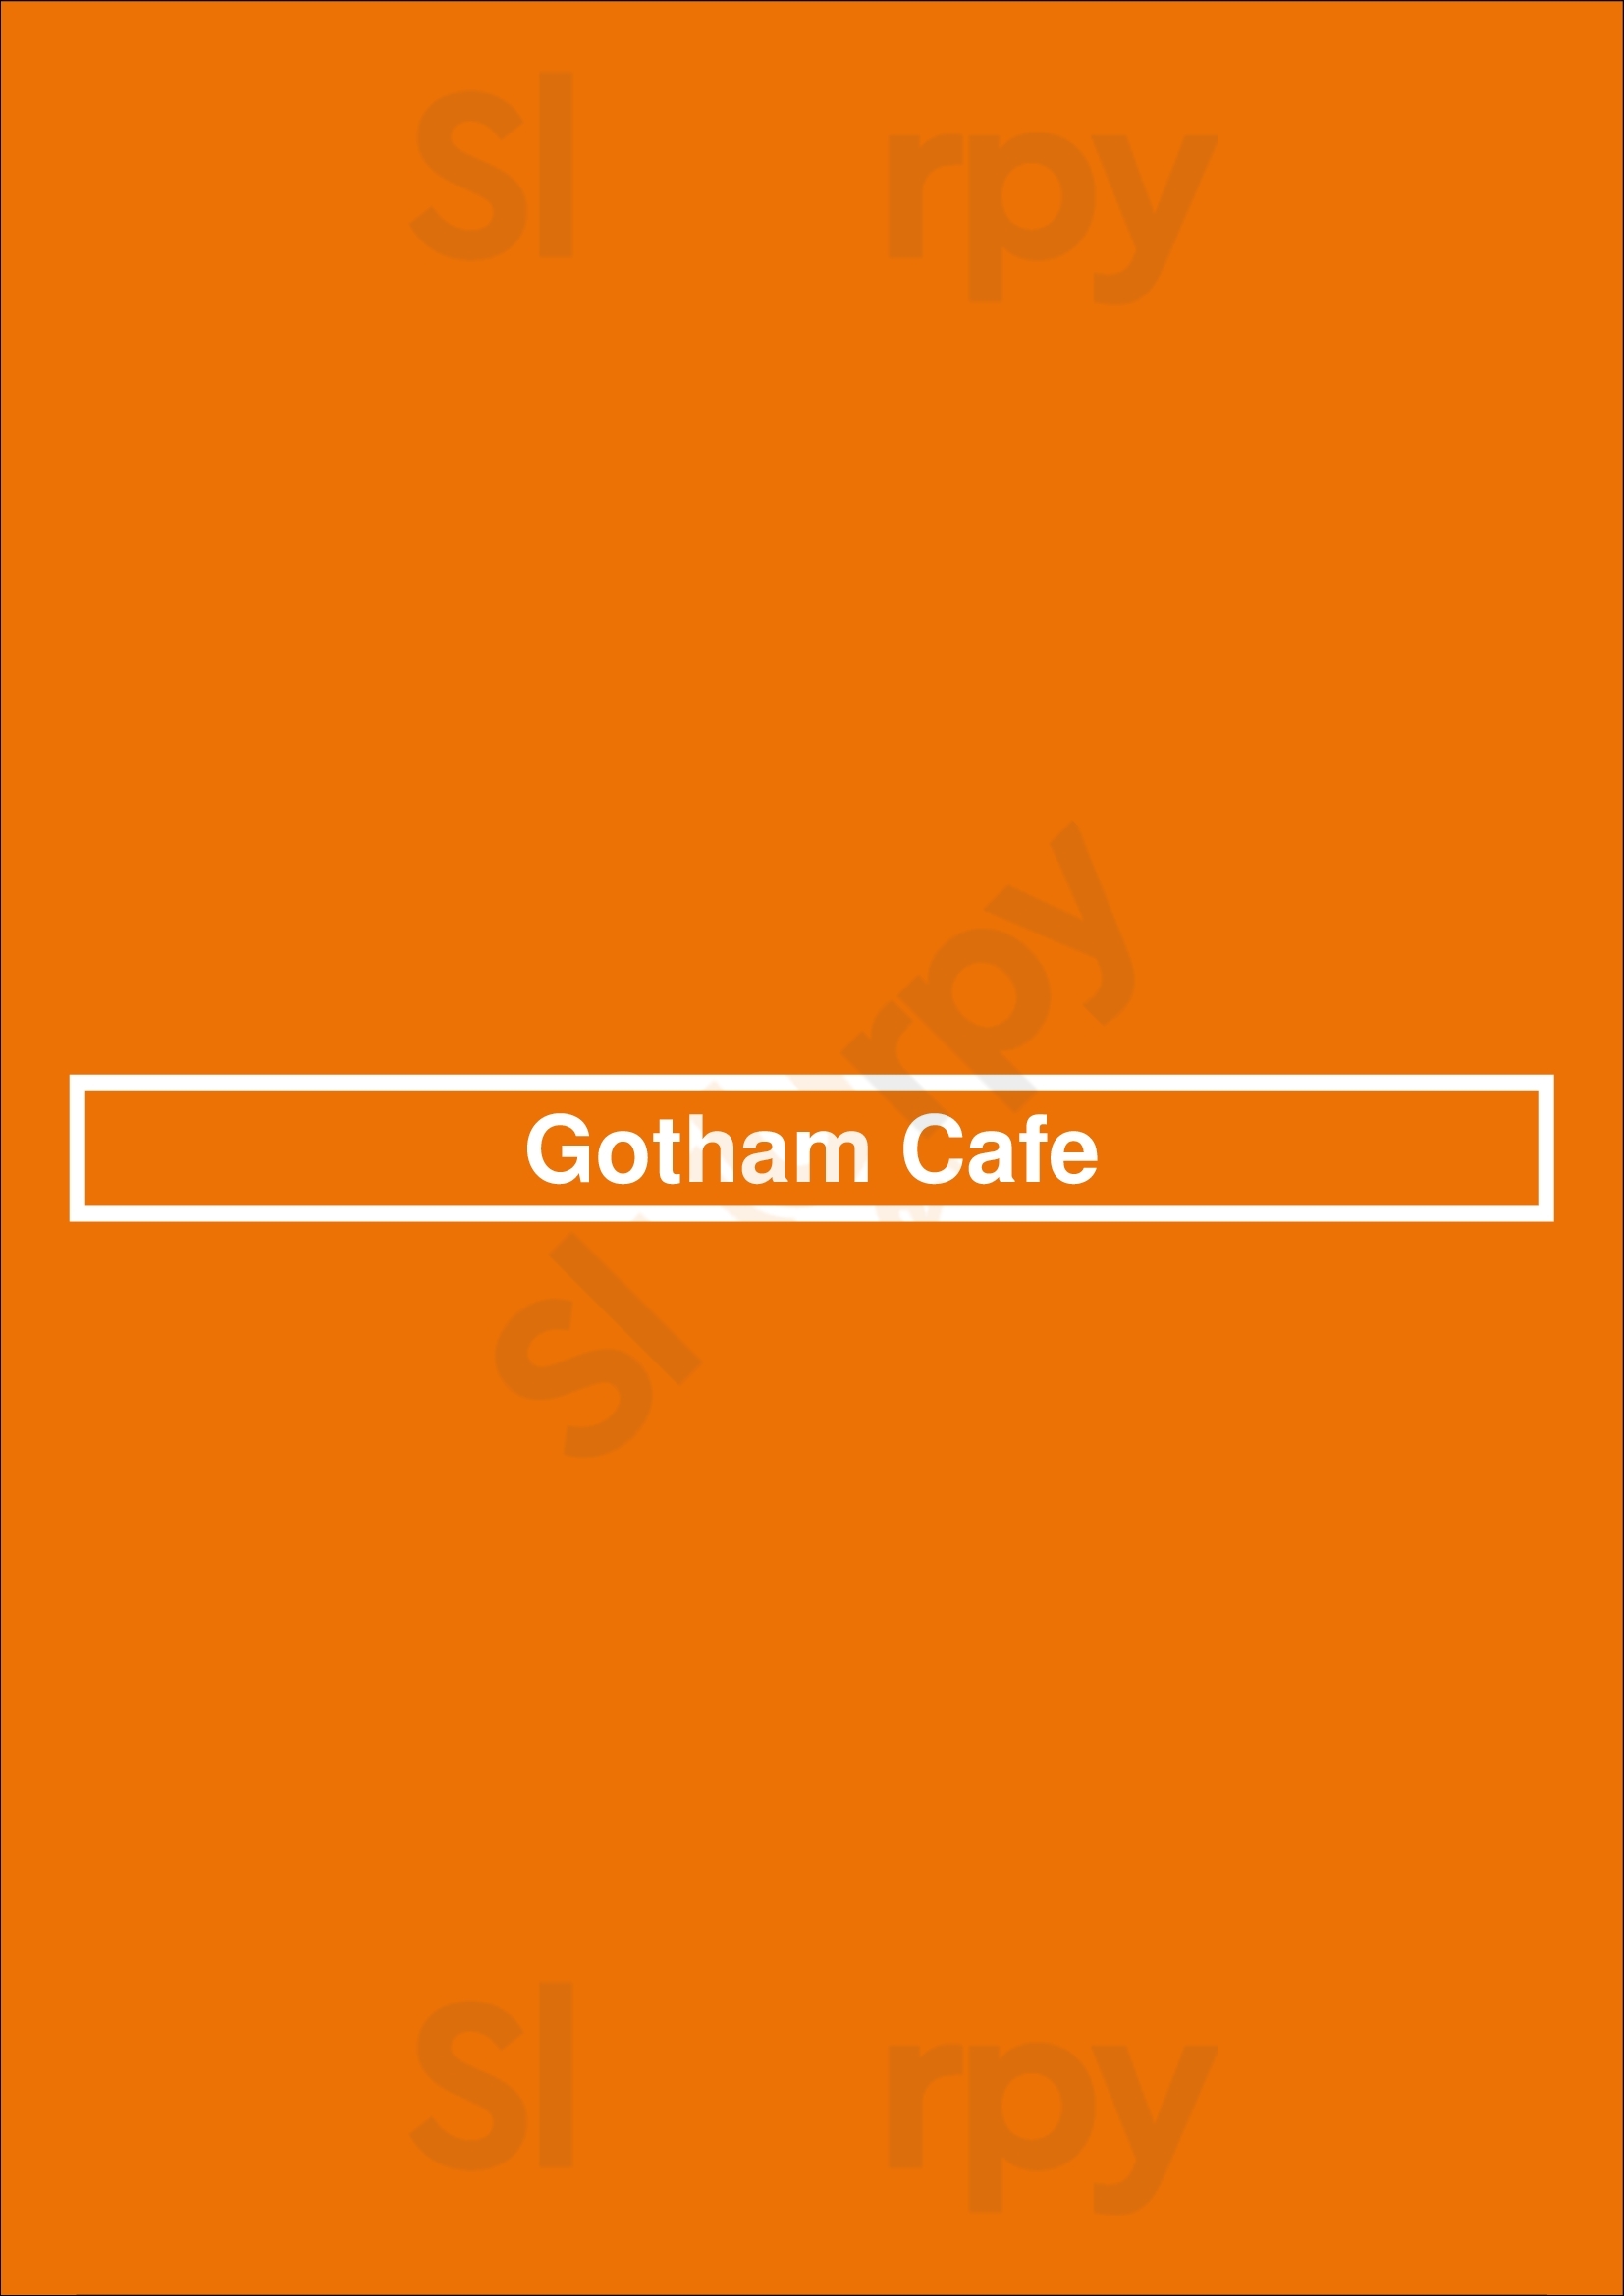 Gotham Cafe Dublin Menu - 1